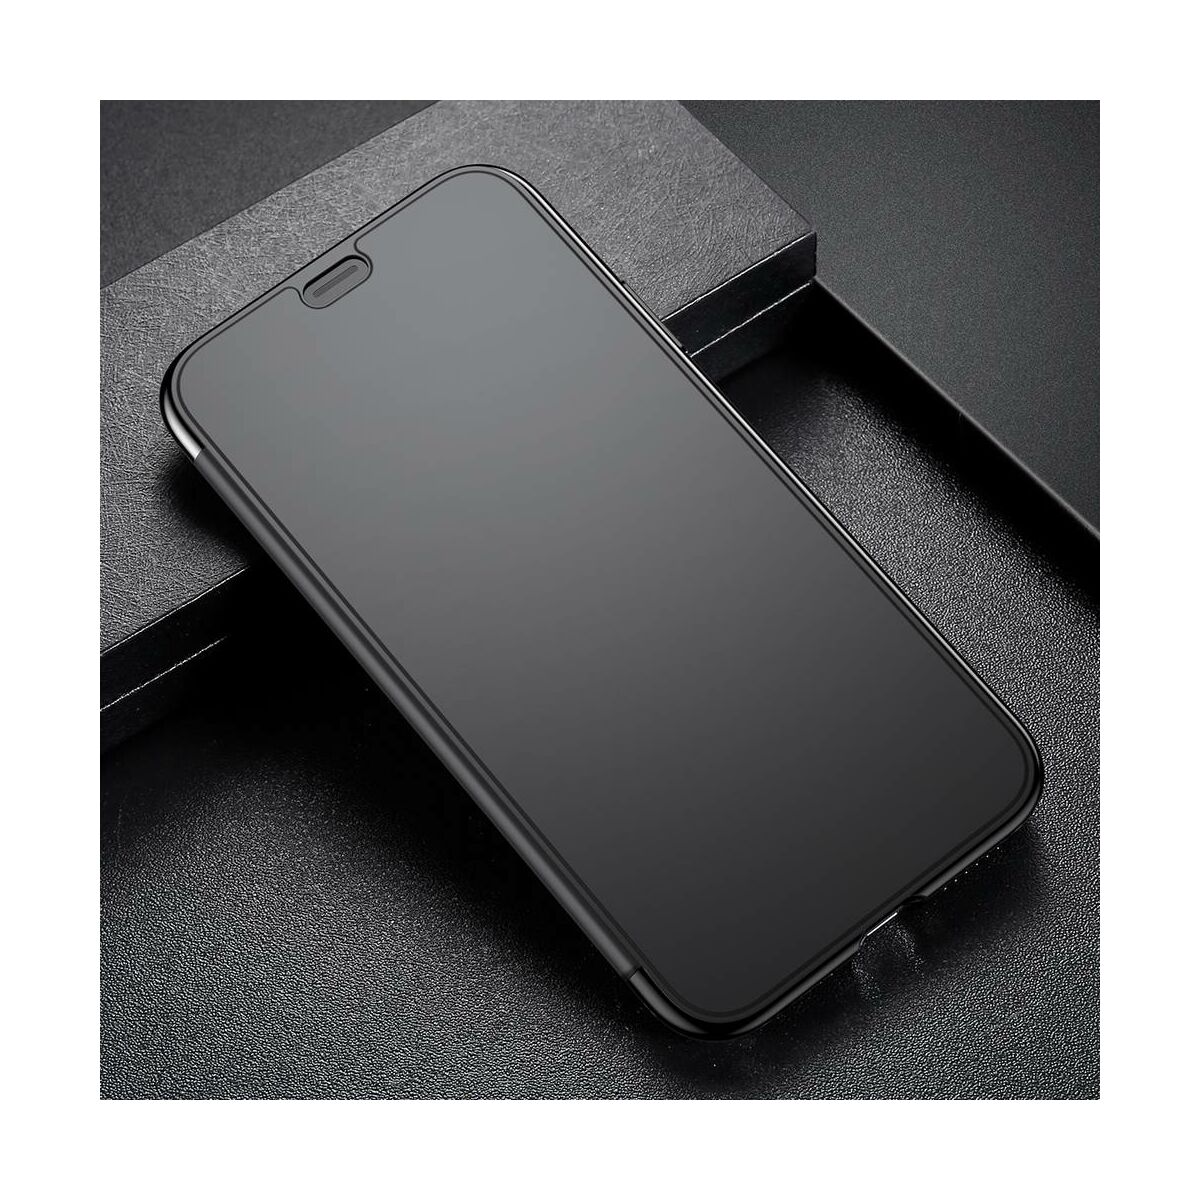 Kép 6/8 - Baseus iPhone XS Max tok, Touchable kihajtható, érintőfelületű flip tok, fekete (WIAPIPH65-TS01)